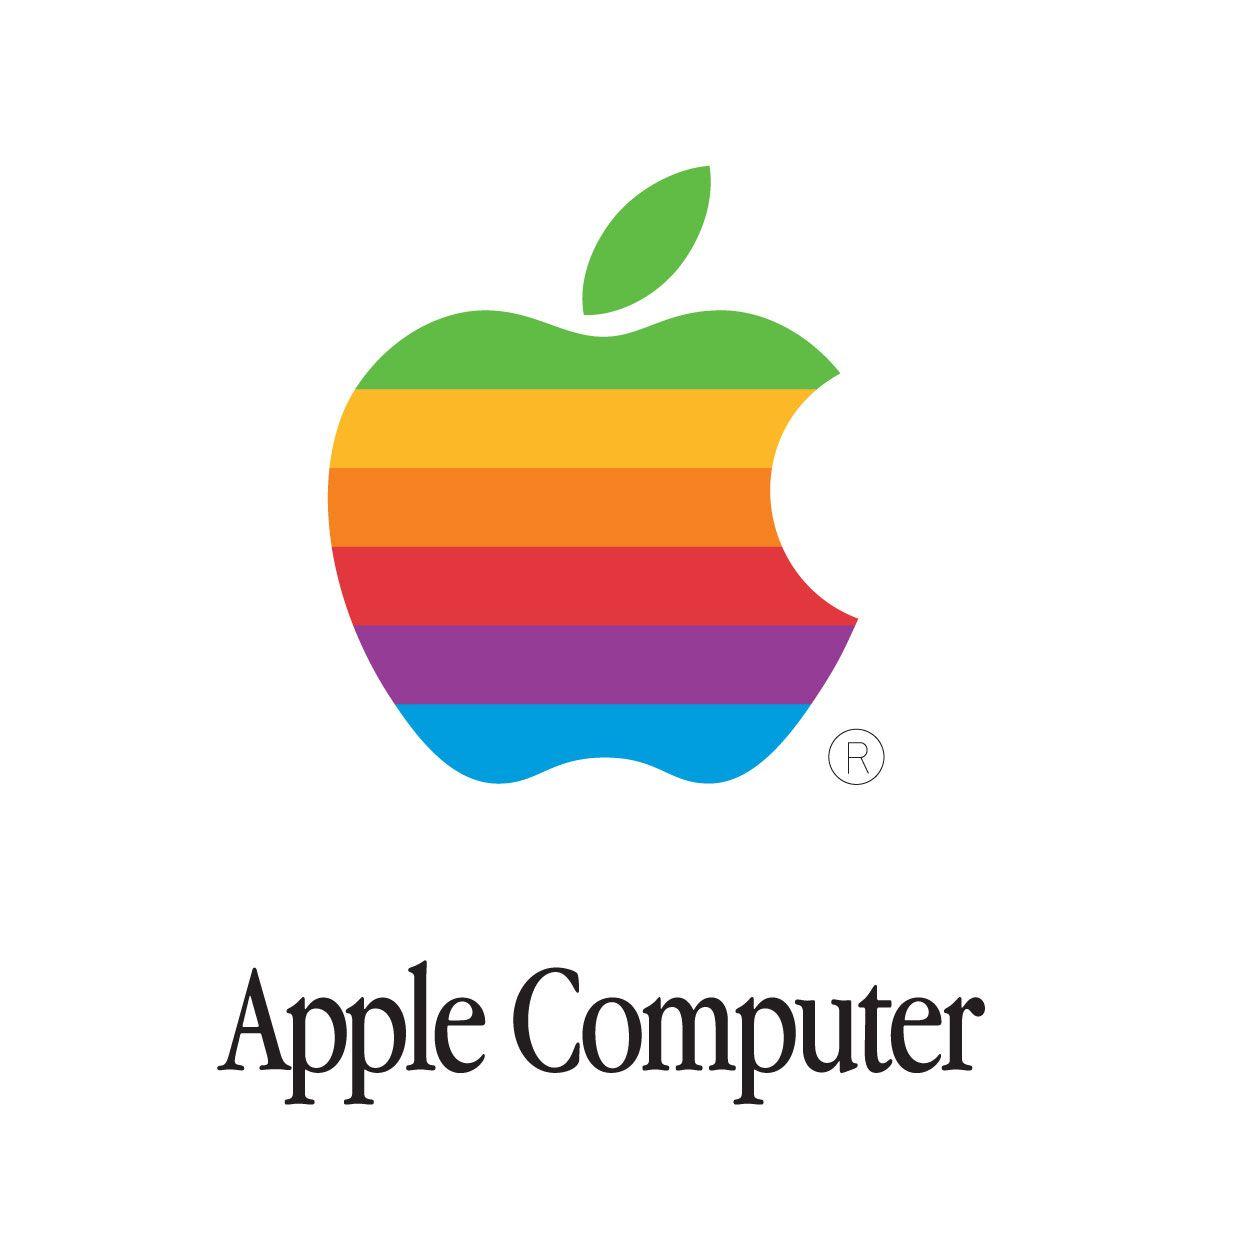 Old Apple Computer Logo - Old-Apple-Computer-Logo - The Technology Geek